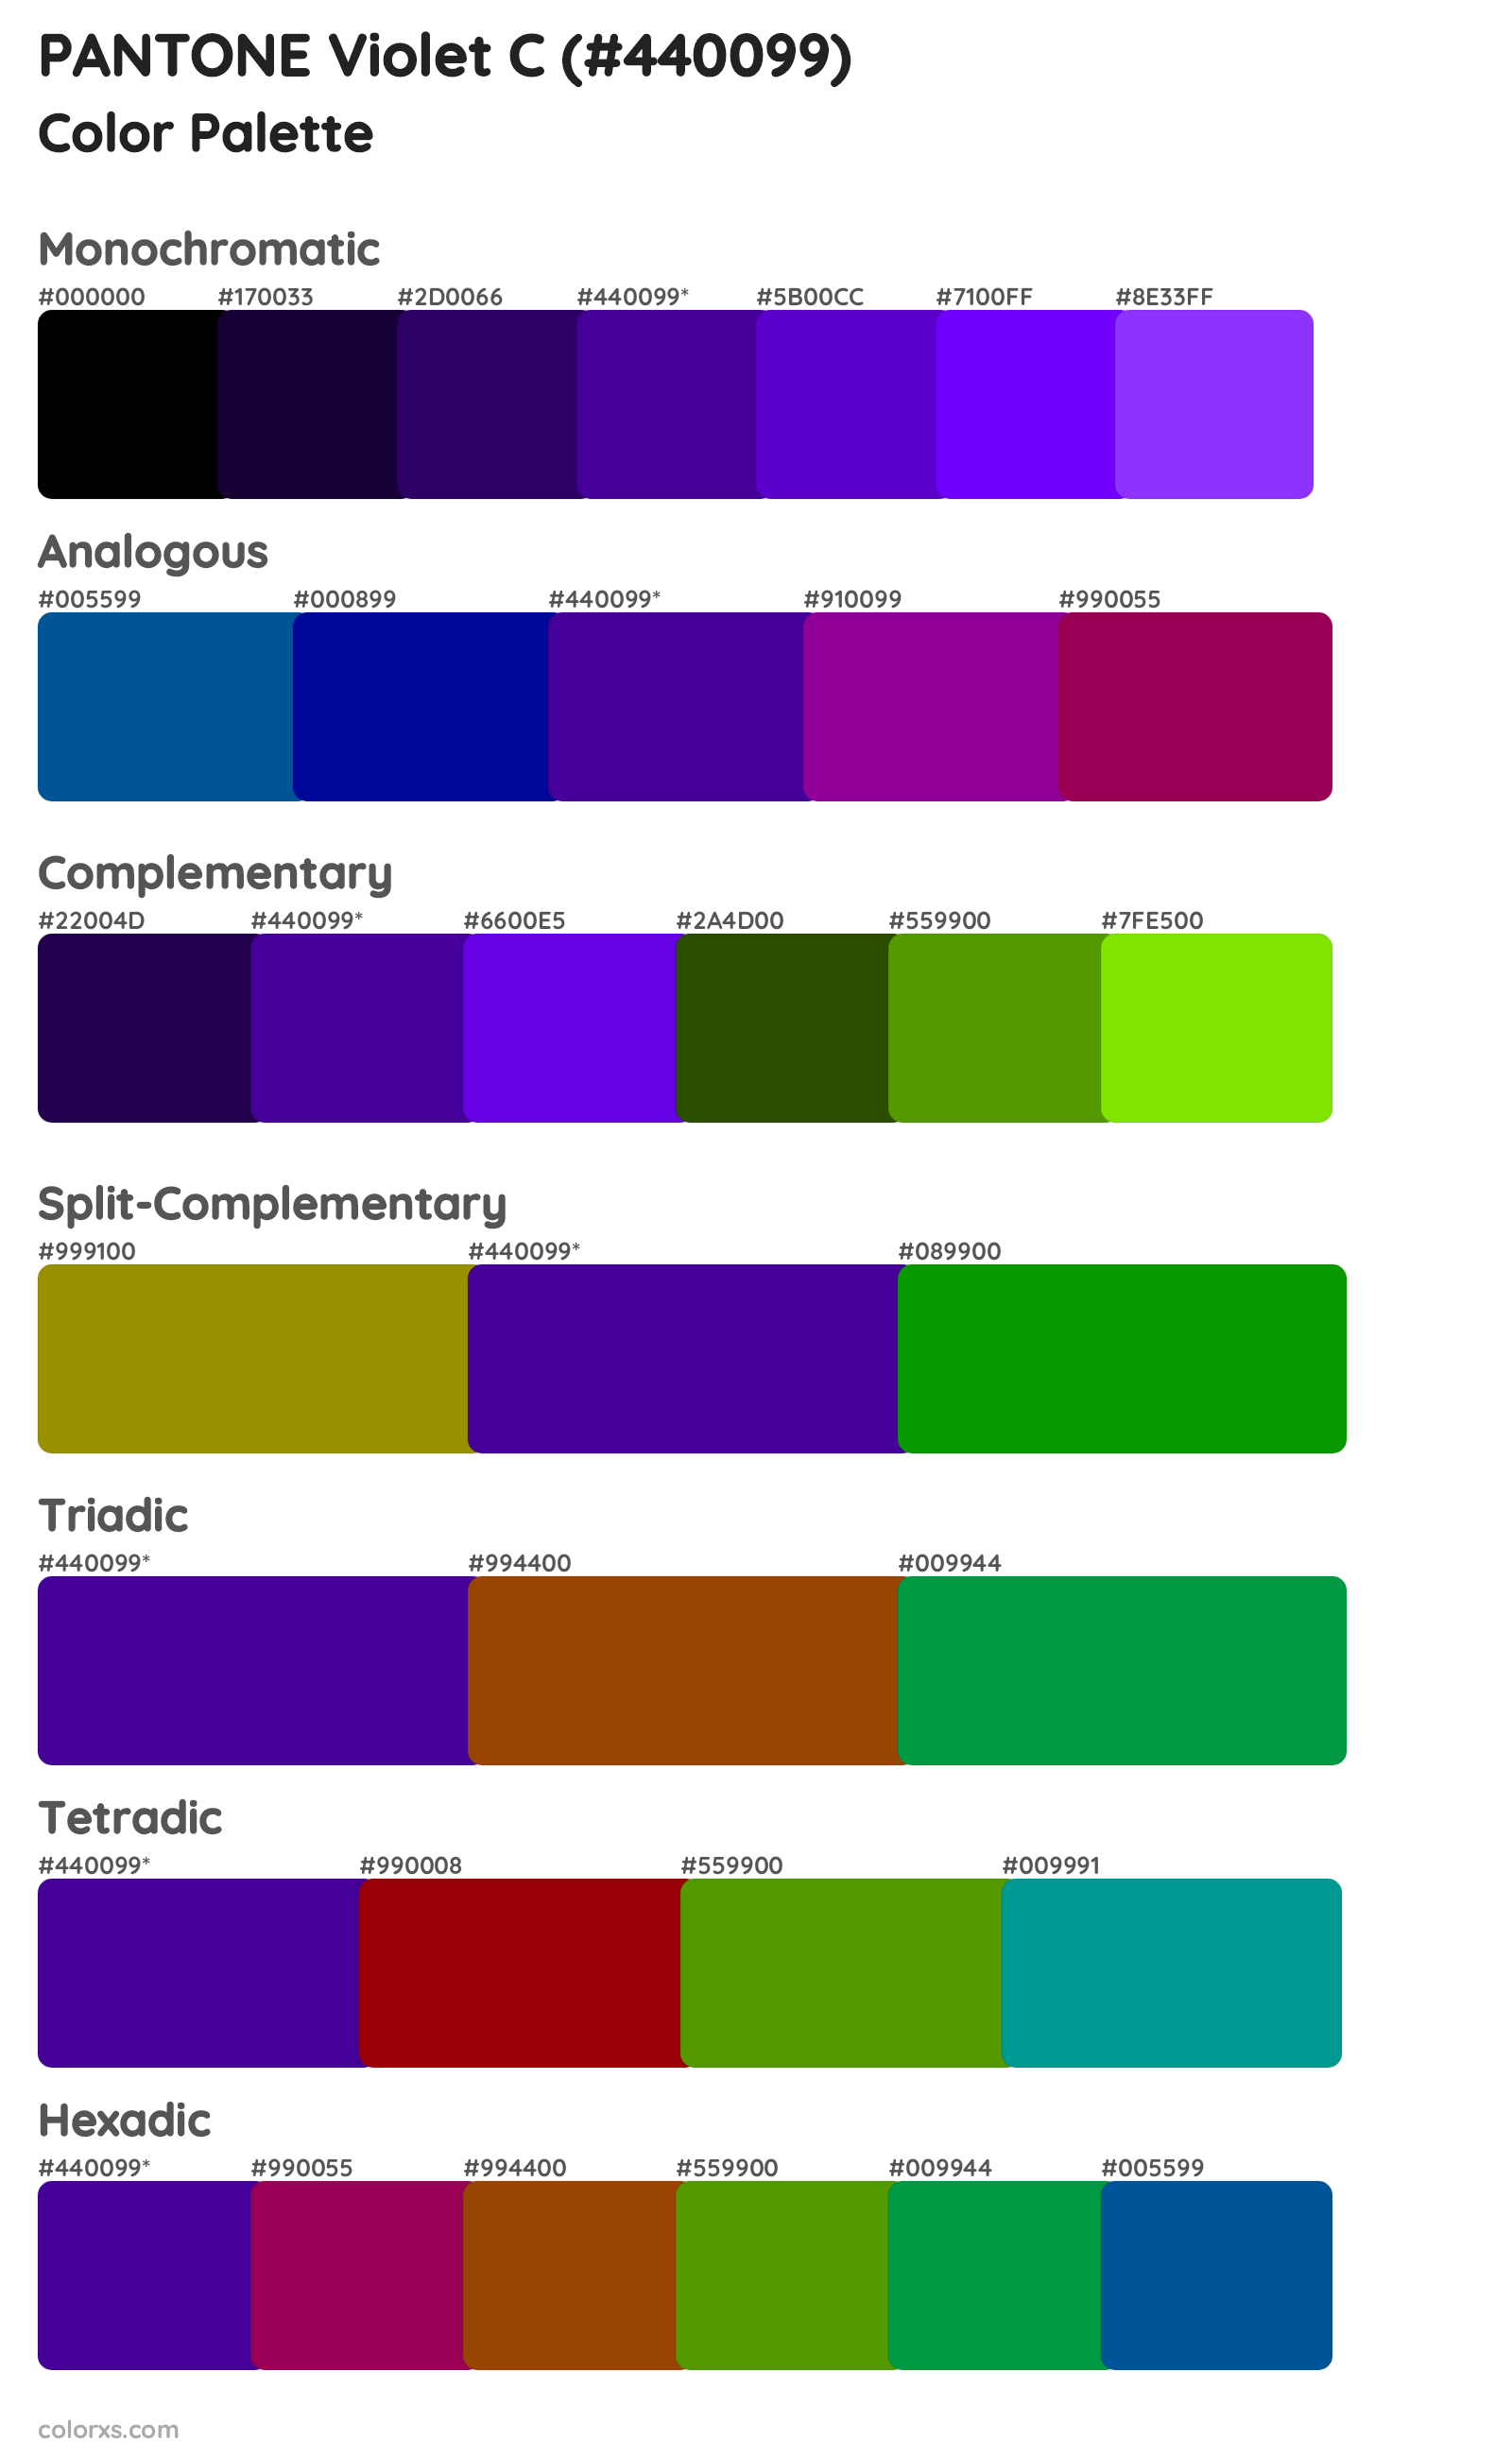 PANTONE Violet C Color Scheme Palettes